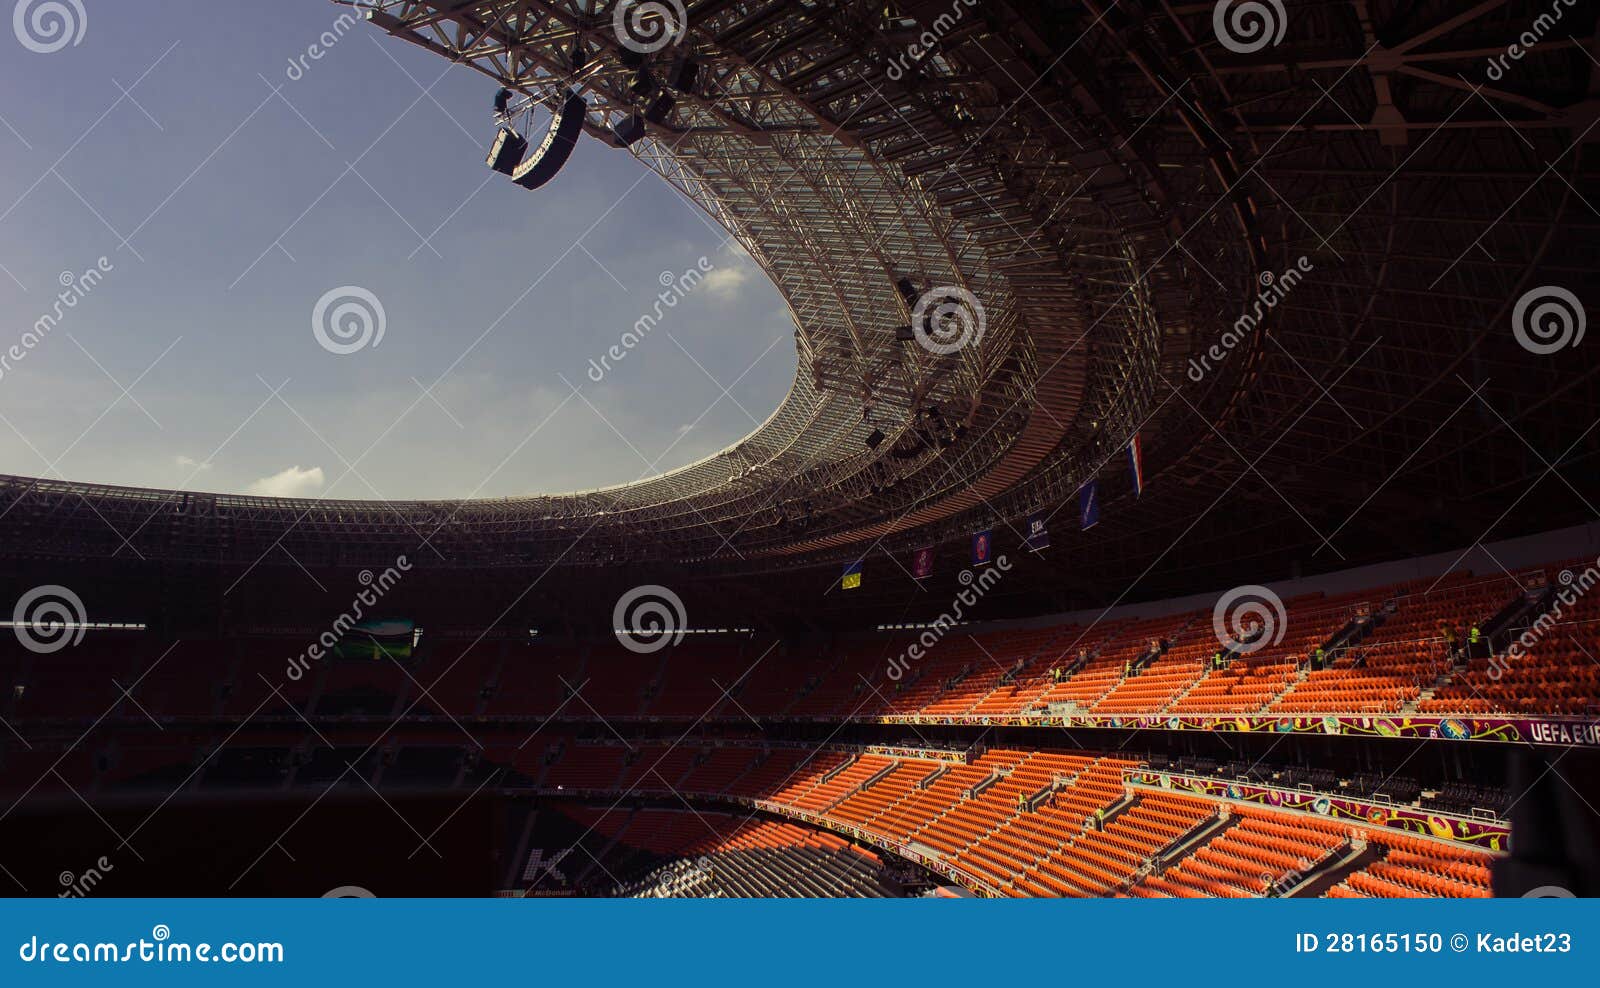 New Shakhtar's Soccer Stadium In Donetsk, Ukraine Editorial Image